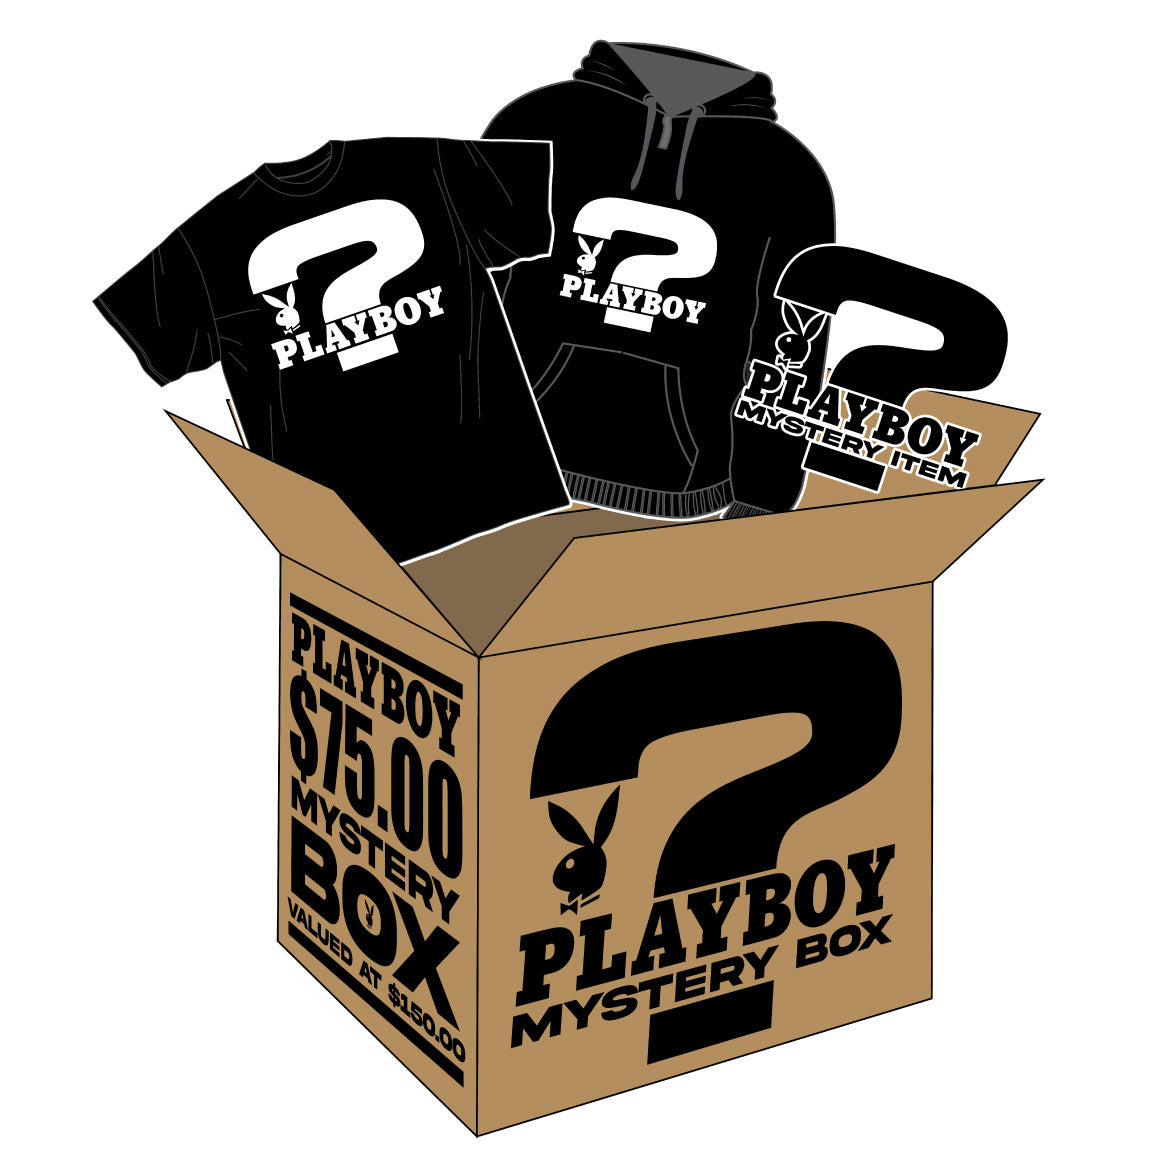 $75 Mystery Box ($150 Value)